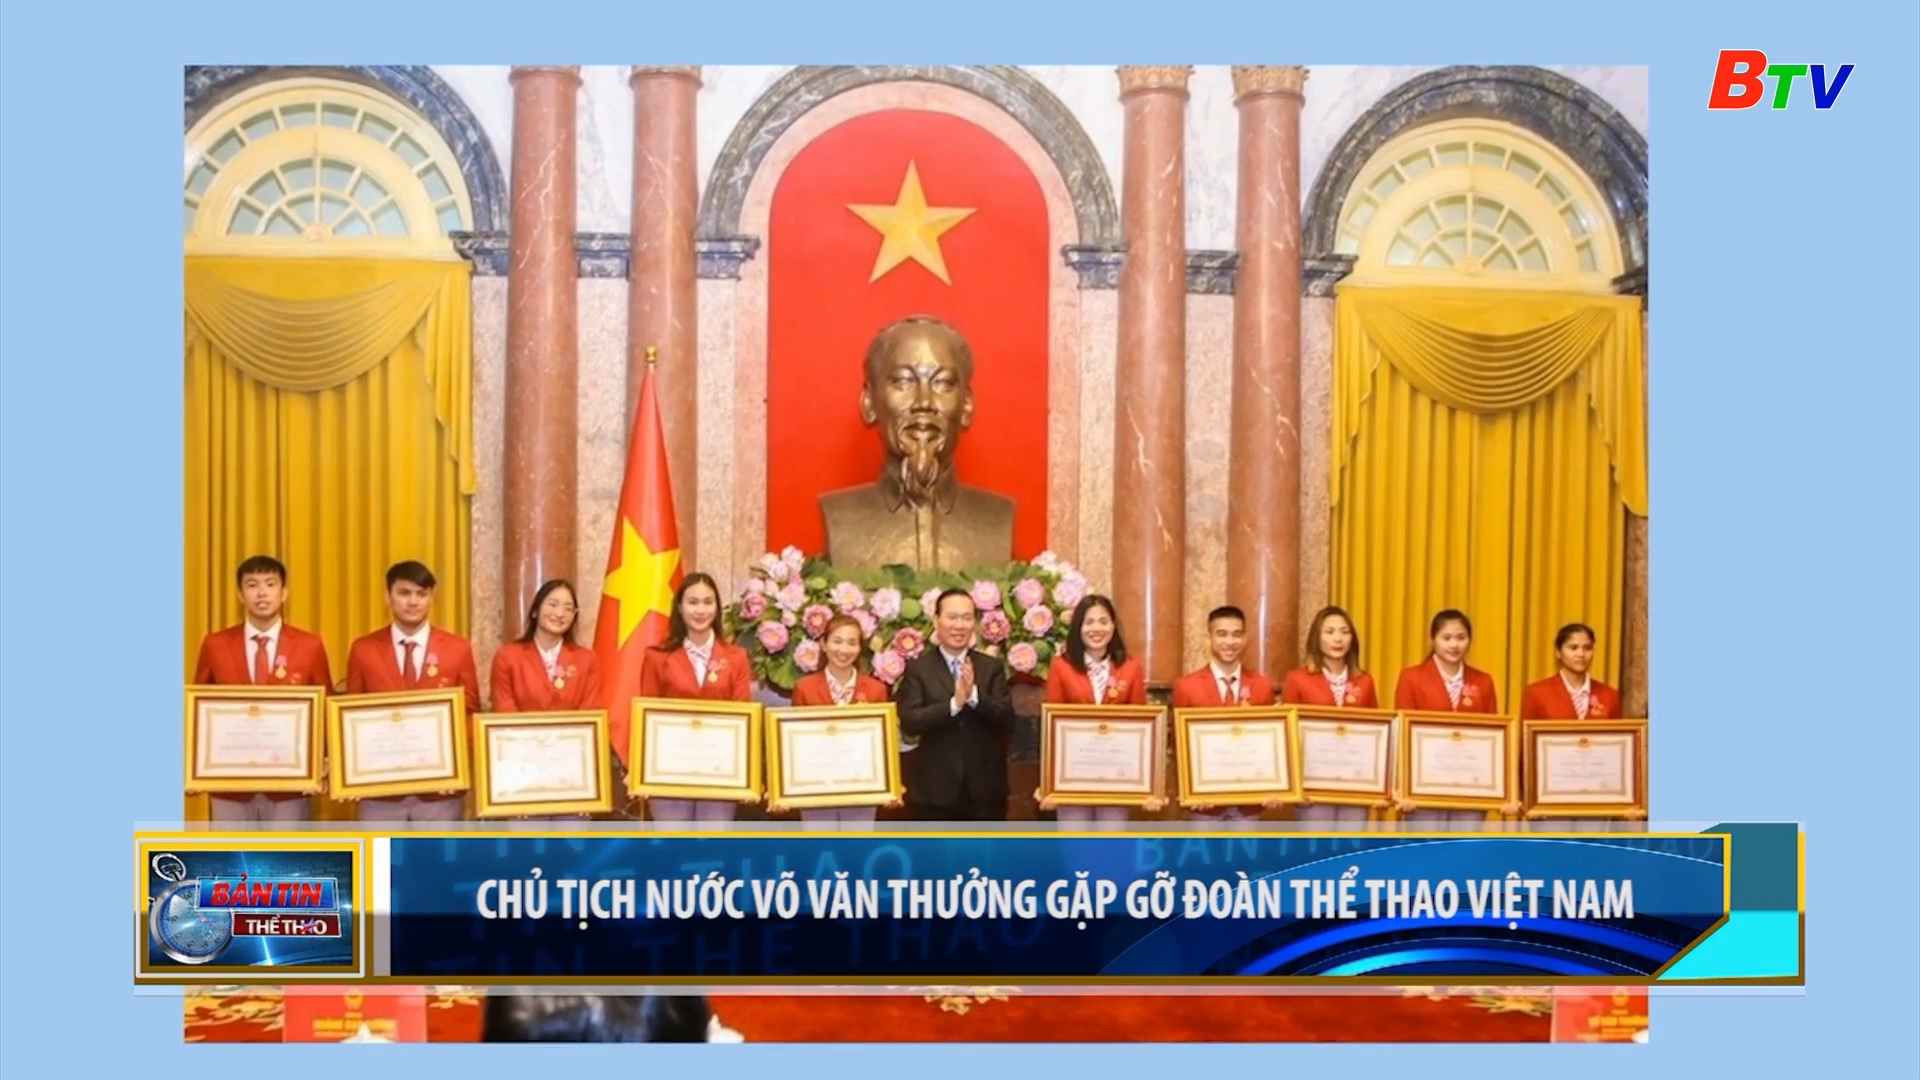 Chủ tịch nước Võ Văn Thưởng gặp gỡ đoàn thể thao Việt Nam